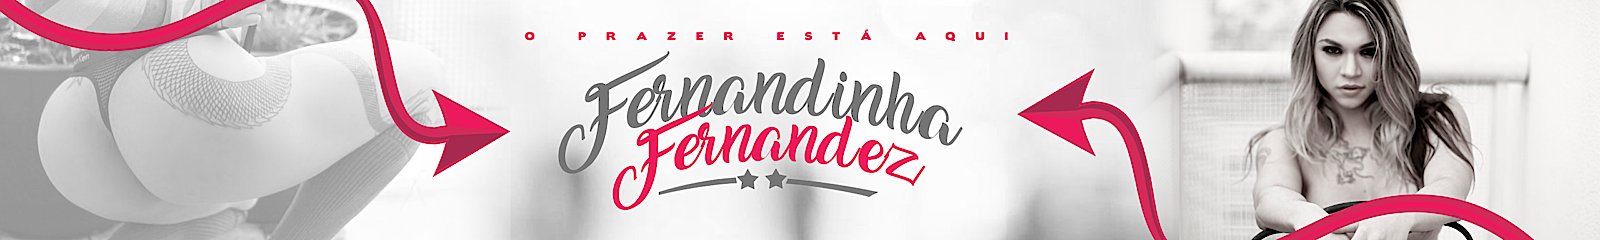 Fernandinha Fernandez